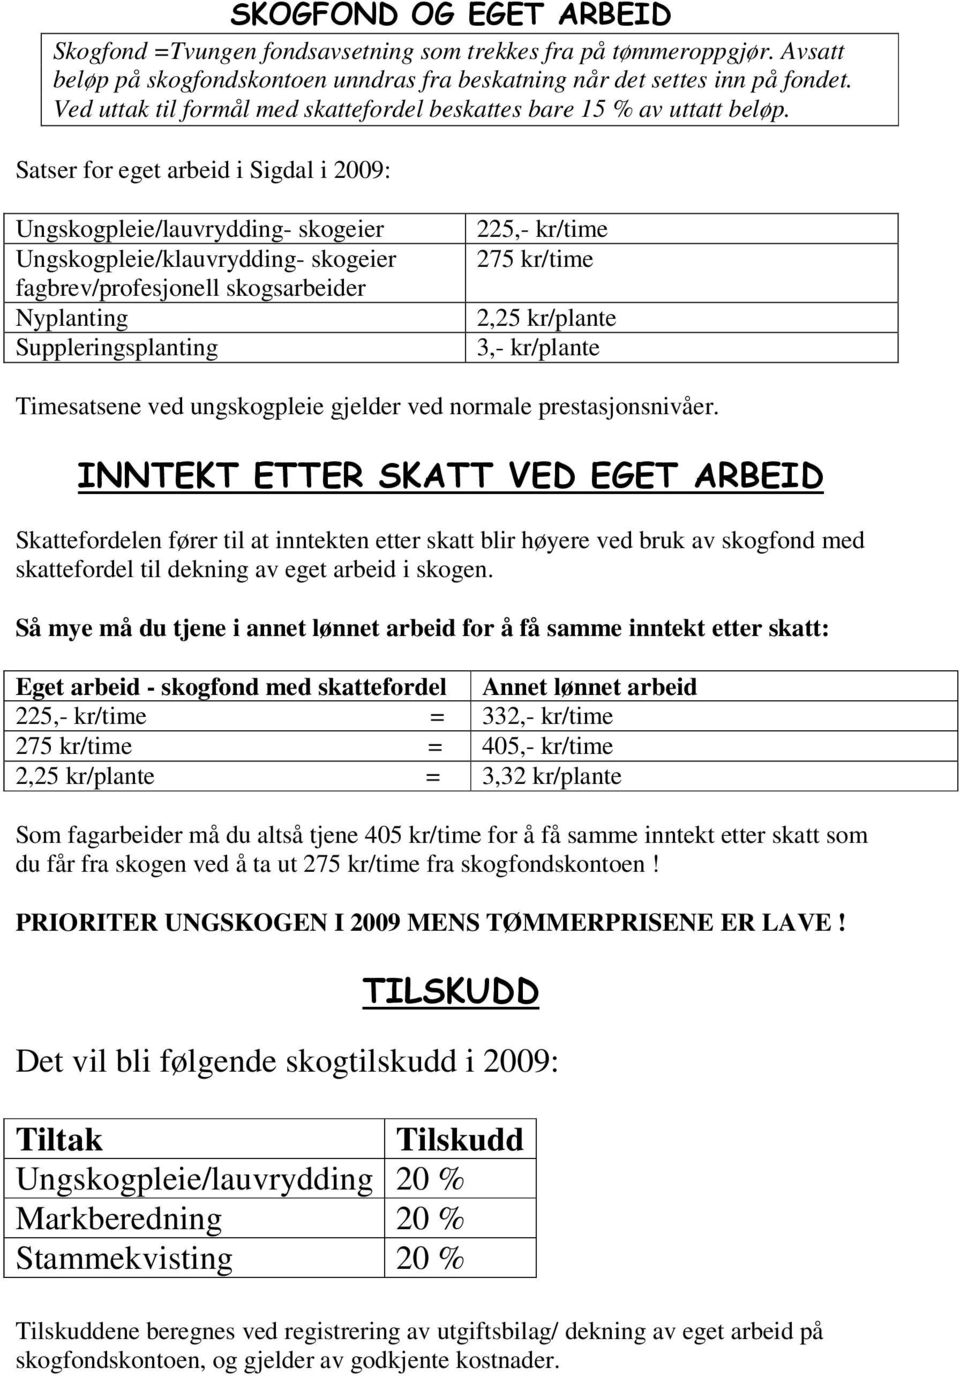 Satser for eget arbeid i Sigdal i 2009: Ungskogpleie/lauvrydding- skogeier Ungskogpleie/klauvrydding- skogeier fagbrev/profesjonell skogsarbeider Nyplanting Suppleringsplanting 225,- kr/time 275